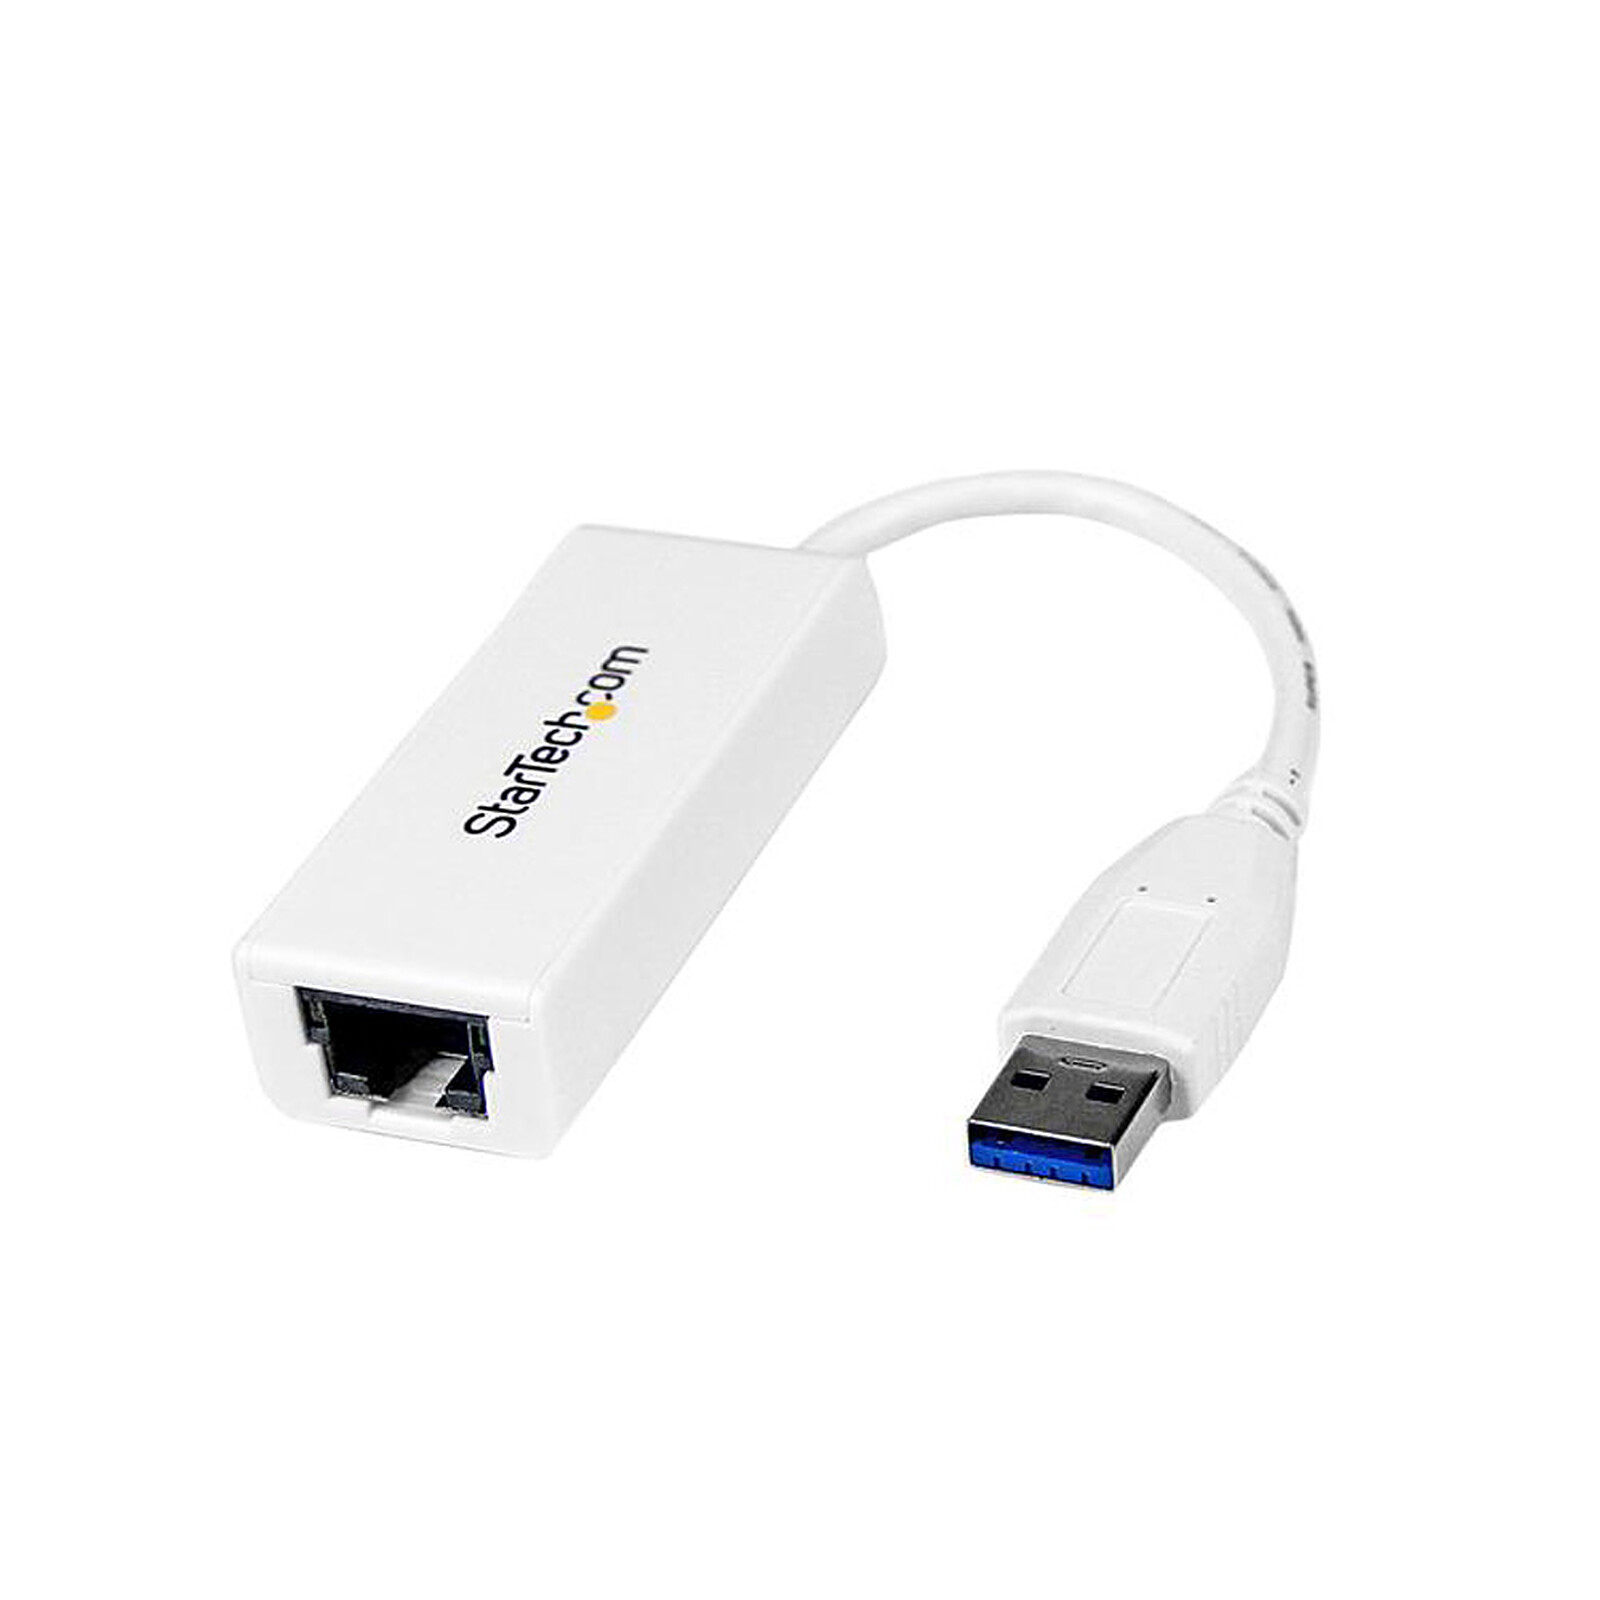 StarTech.com Adaptateur réseau Gigabit Ethernet (USB 3.0) avec câble 30 cm  - Carte réseau - Garantie 3 ans LDLC